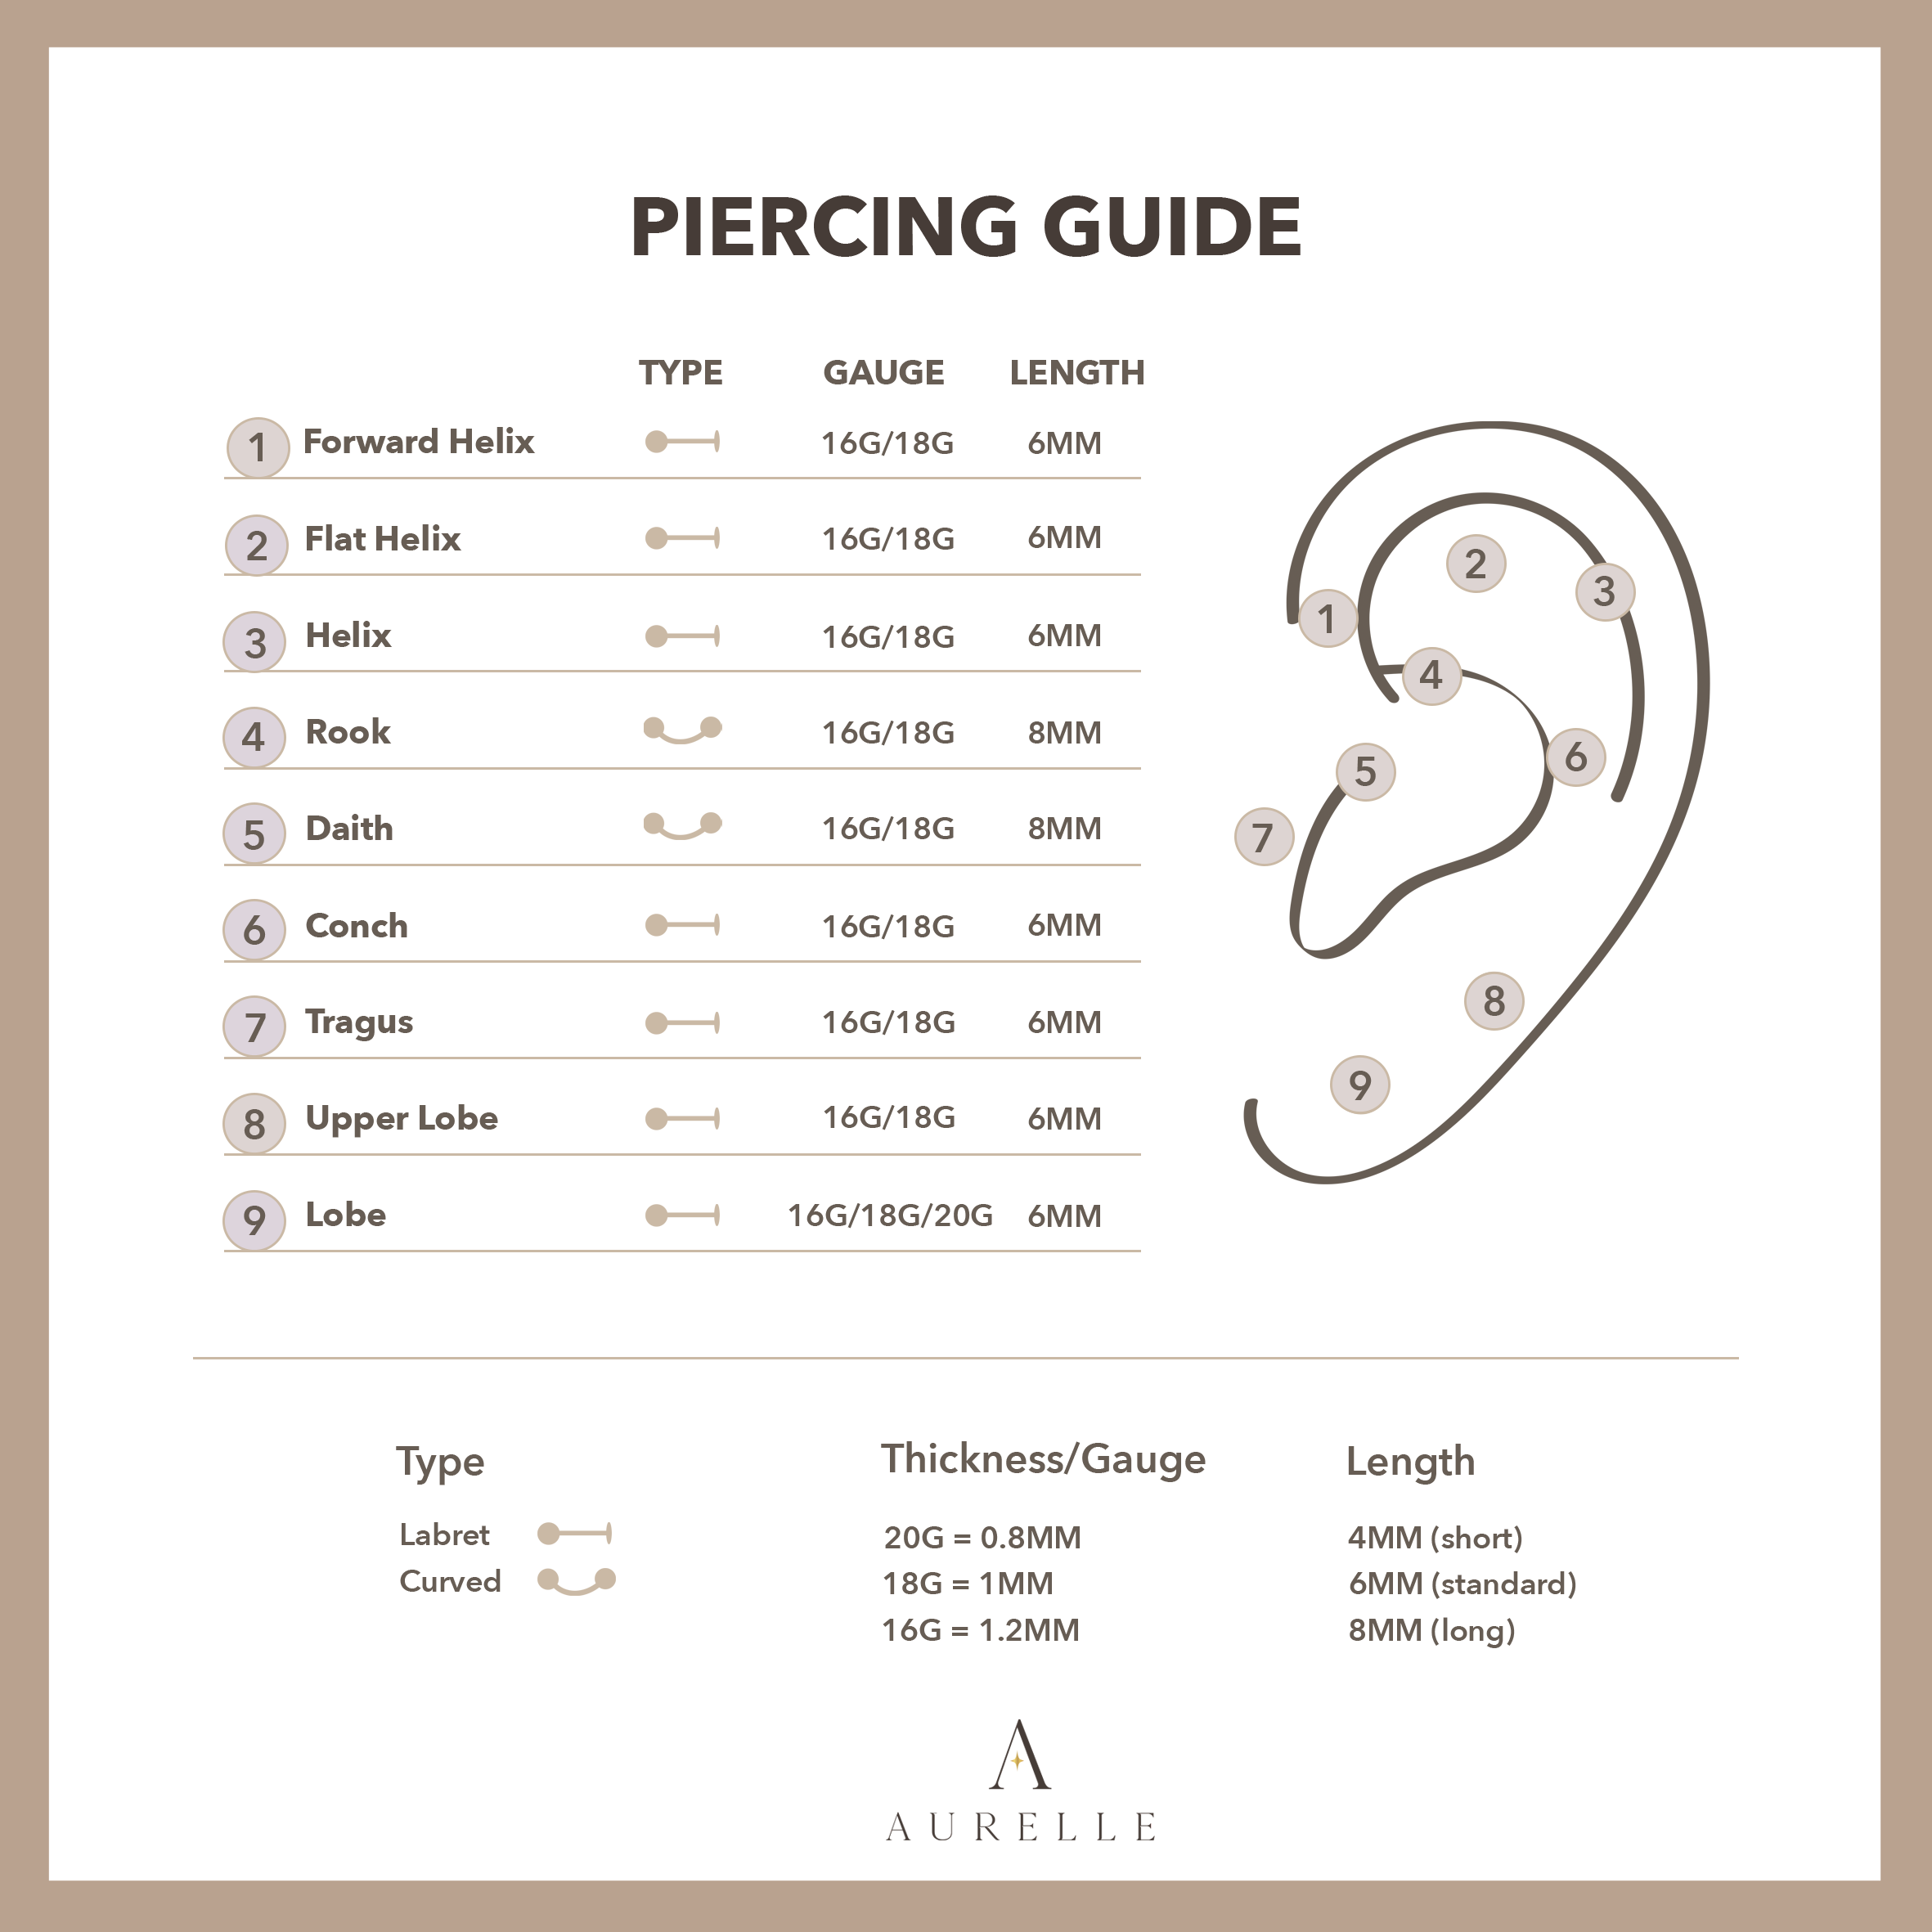 standard gauge for cartilage piercing